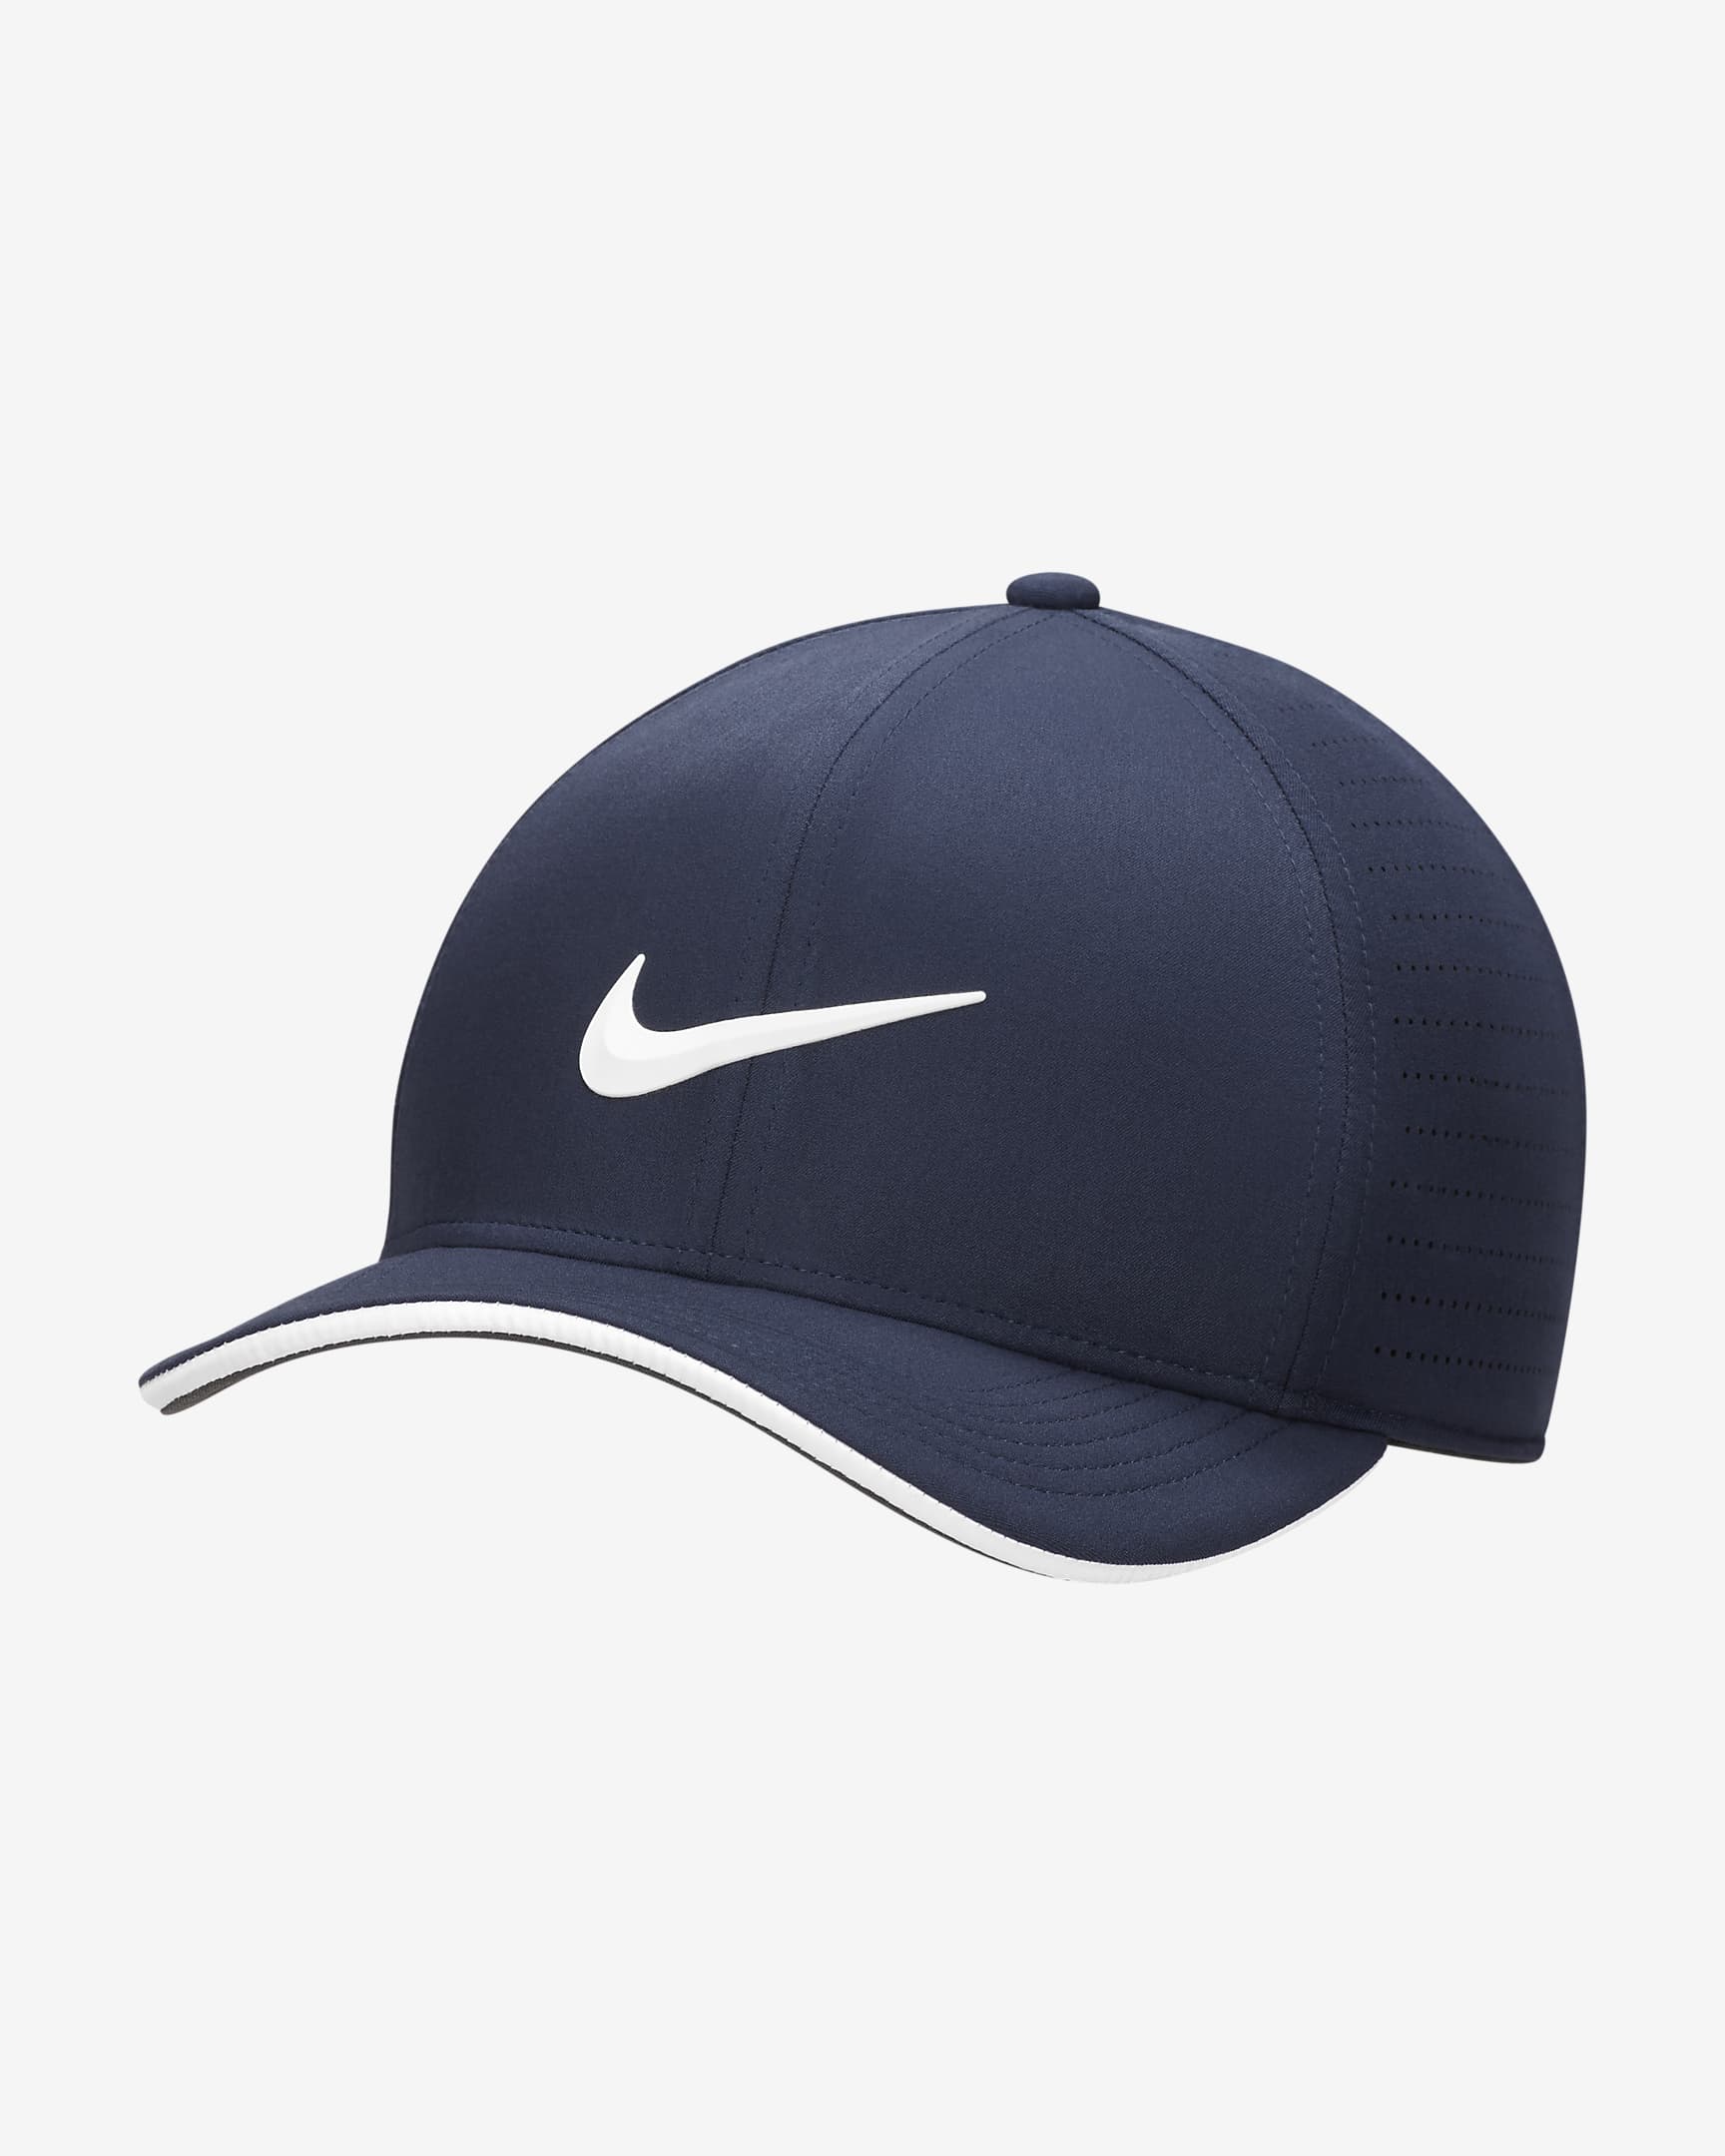 Nike Dri-FIT ADV Classic99 Perforated Golf Hat. Nike IL